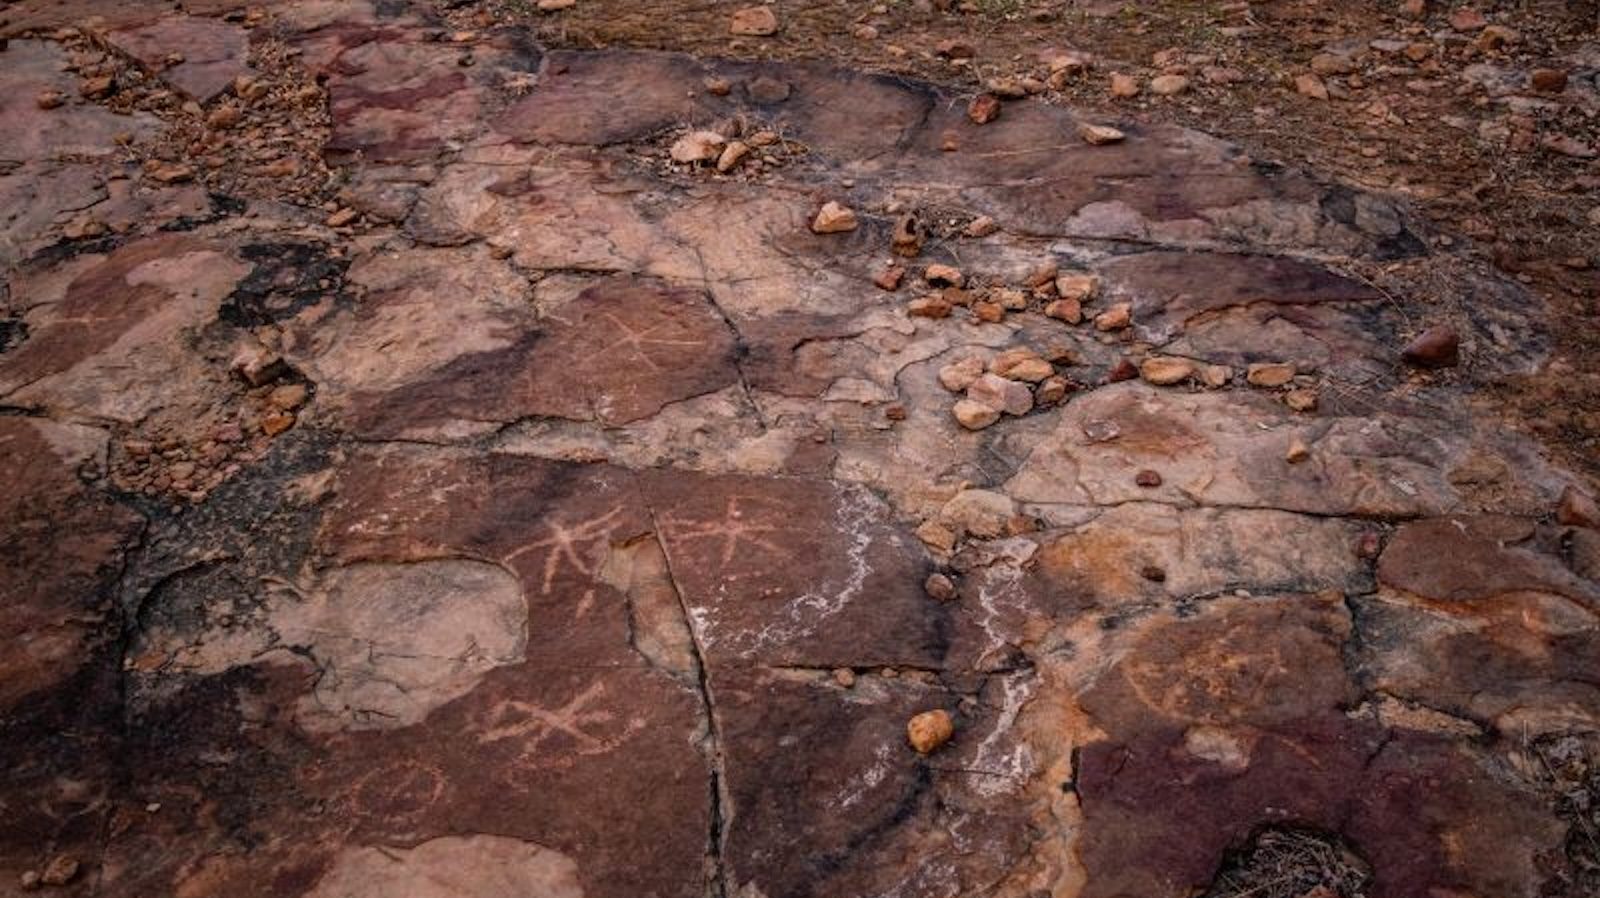 Los misteriosos símbolos encontrados cerca de las huellas arrojan luz sobre el conocimiento de los antiguos humanos sobre los dinosaurios, dicen los científicos